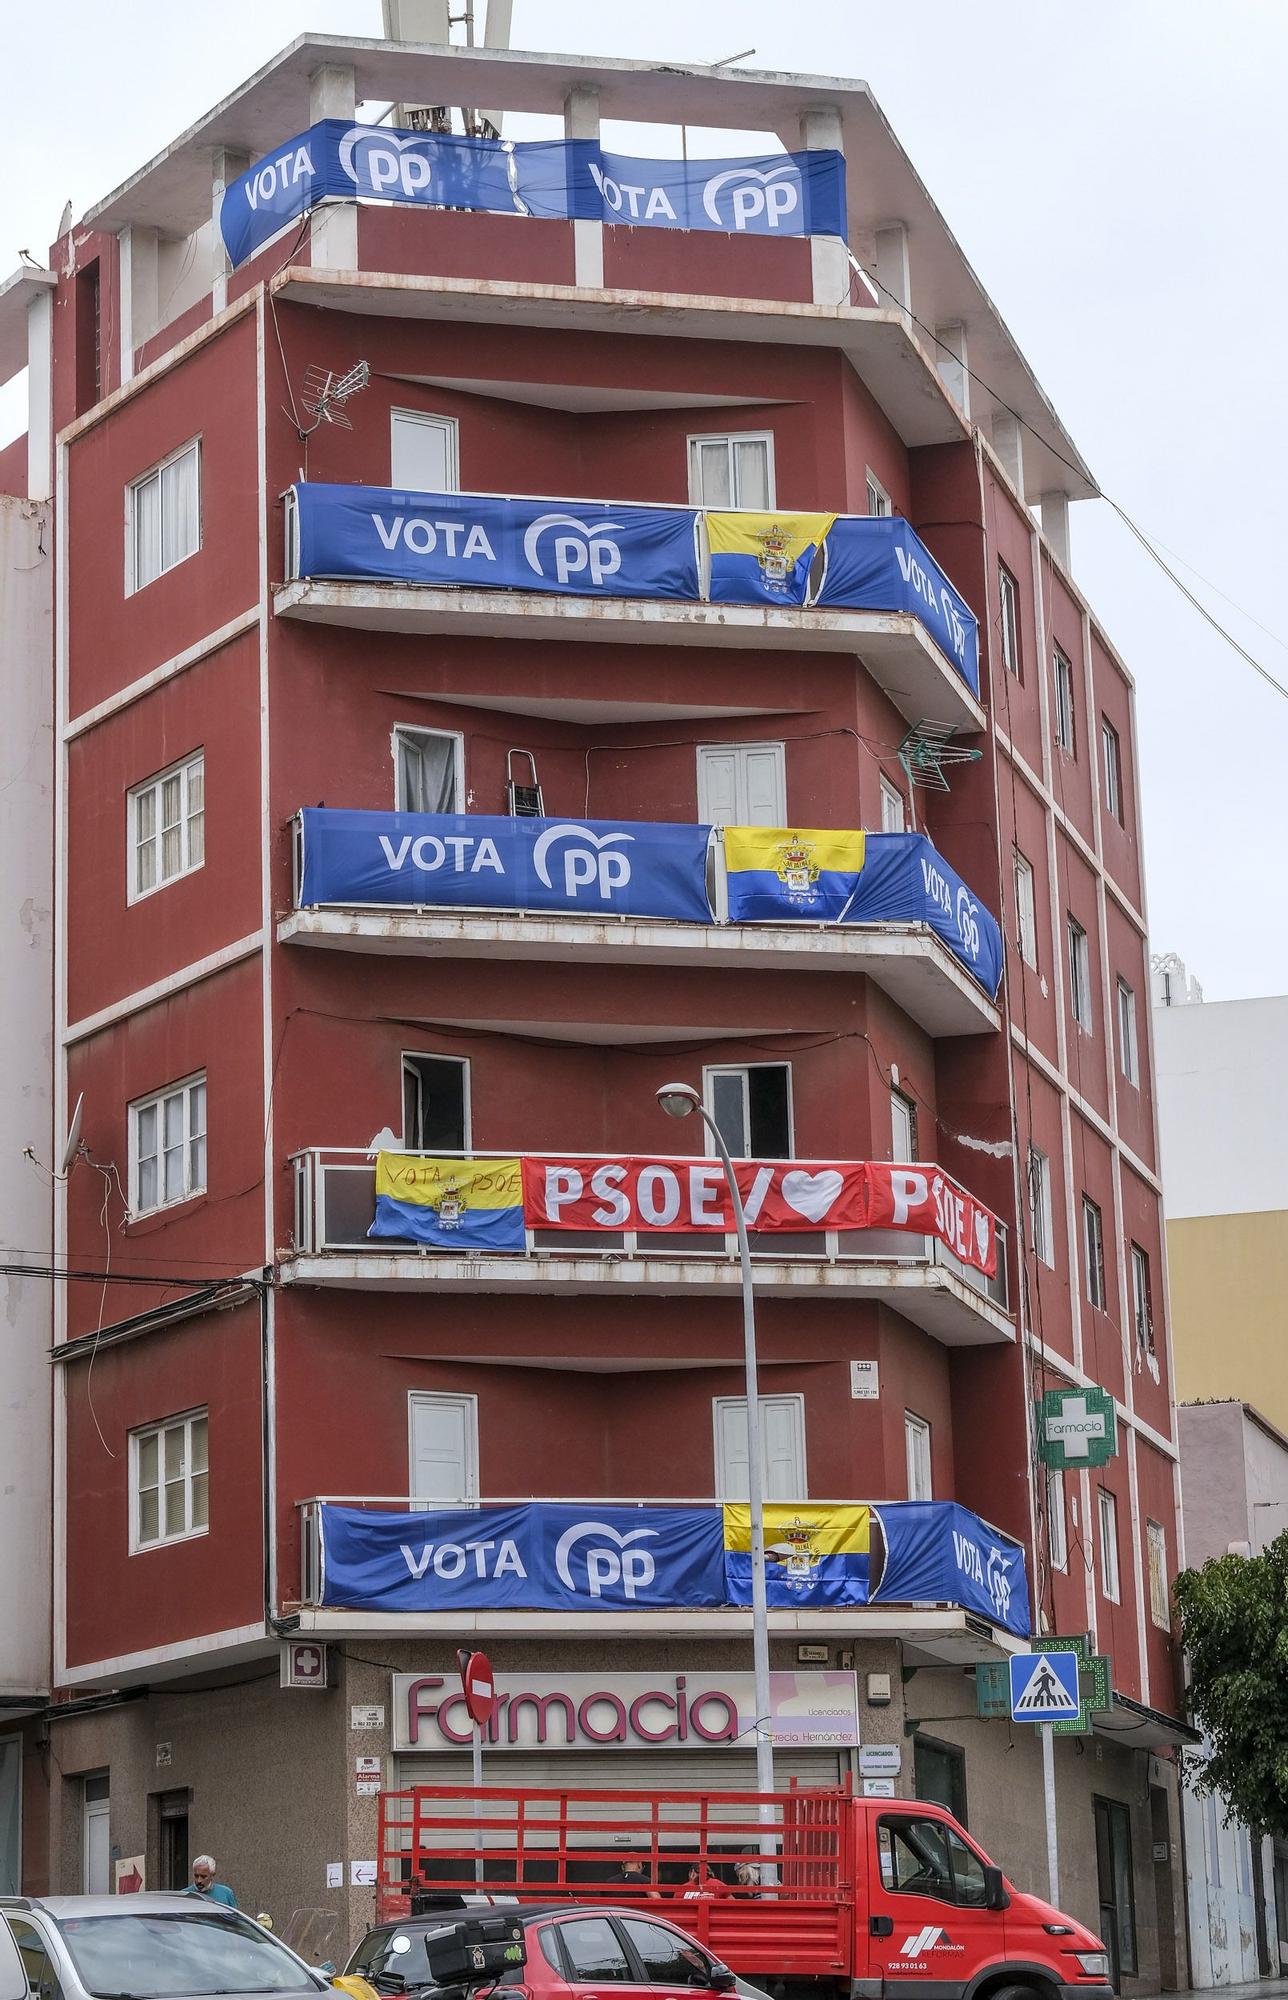 'Guerra' de lonas electorales en un edificio de Las Palmas de Gran Canaria